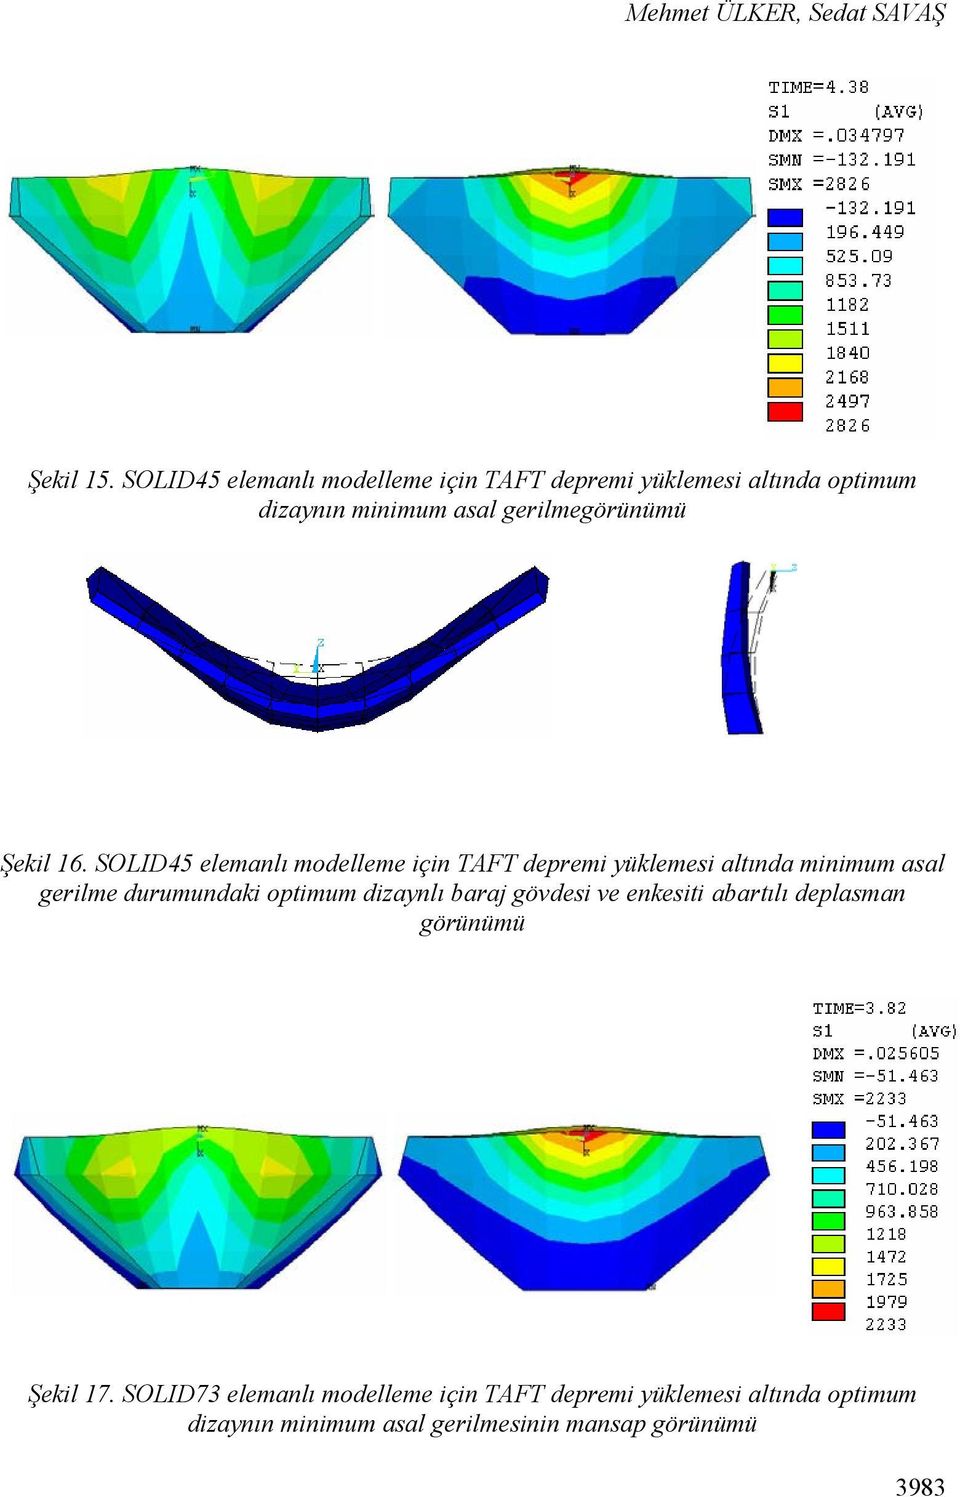 16. SOLID45 elemanlı modelleme için TAFT depremi yüklemesi altında minimum asal gerilme durumundaki optimum